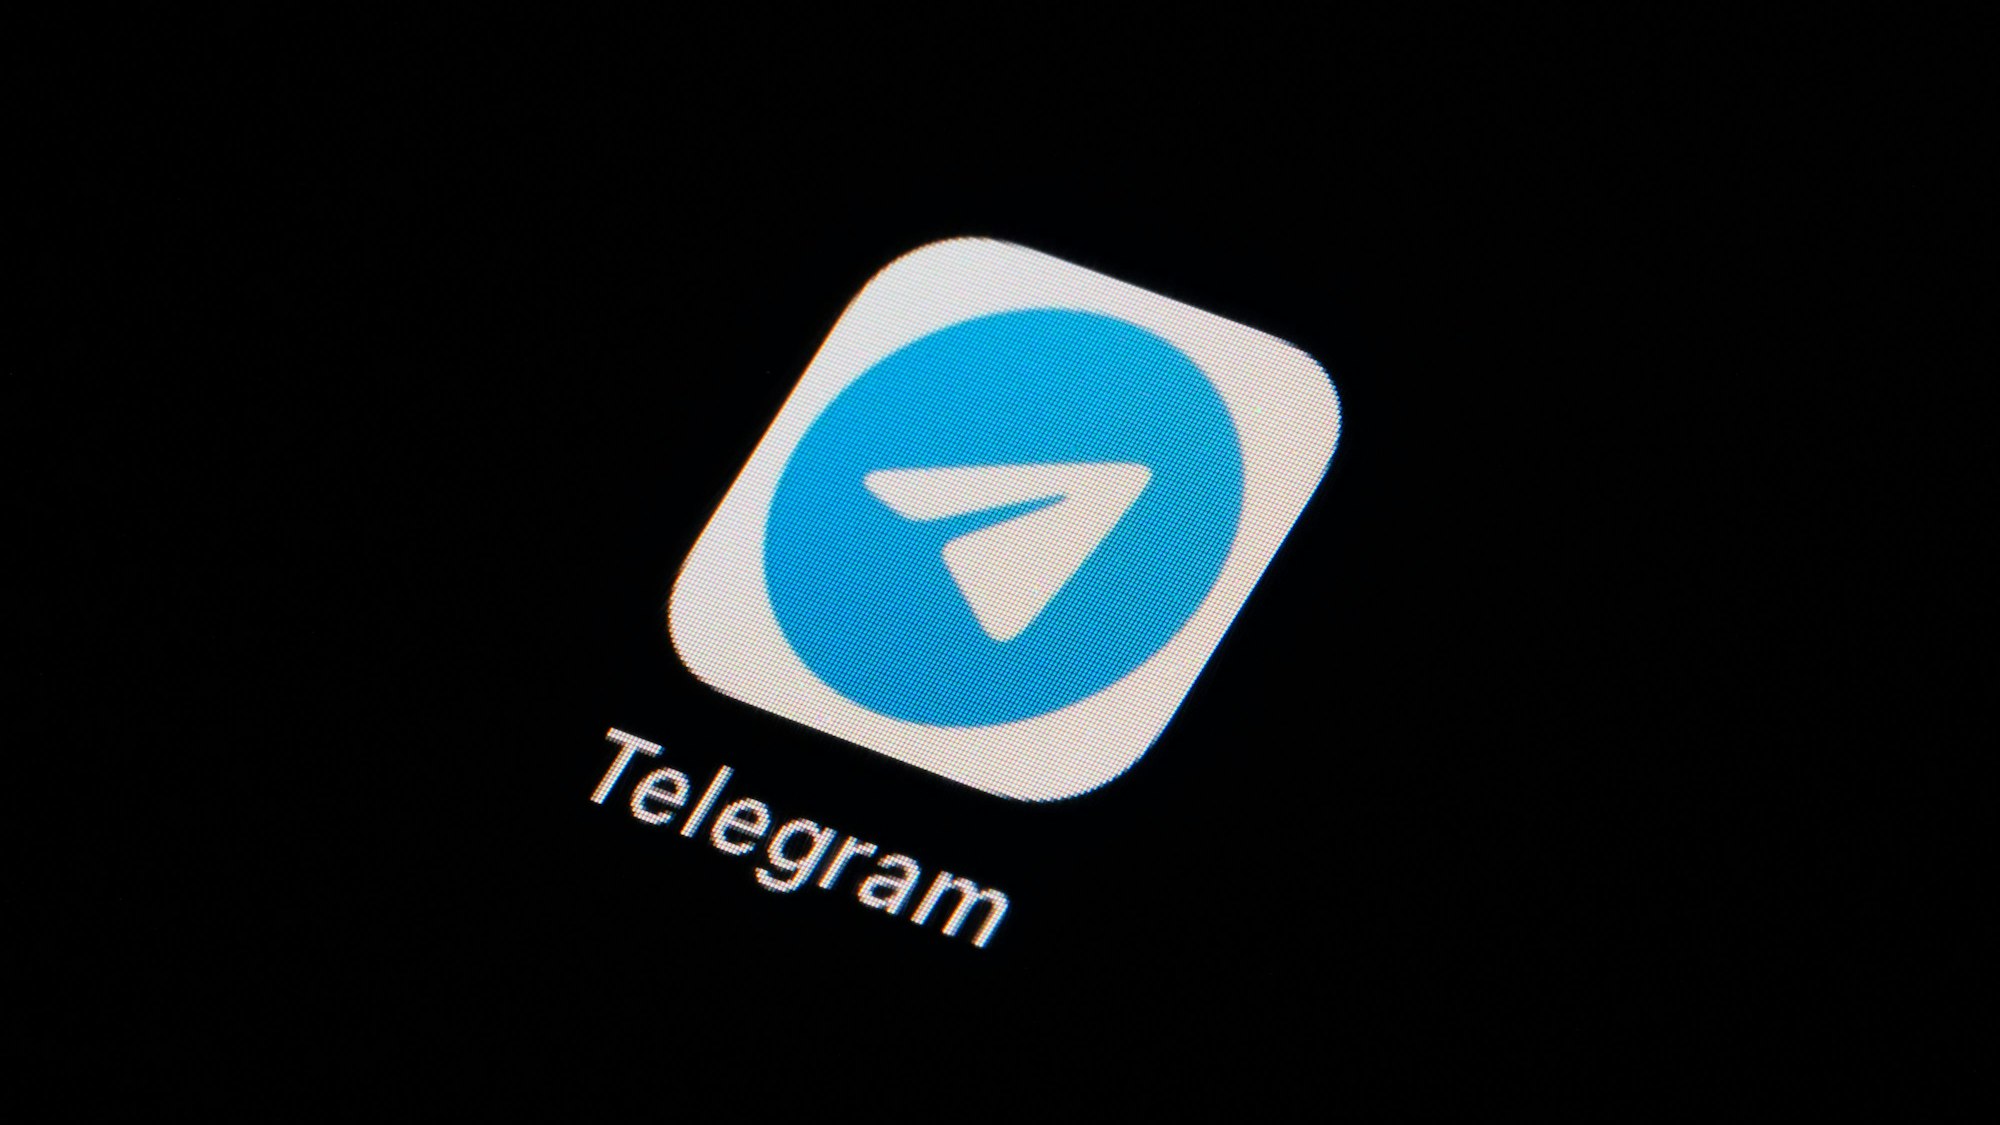 Das Logo von Telegram ist auf einem Handybildschirm zu sehen.